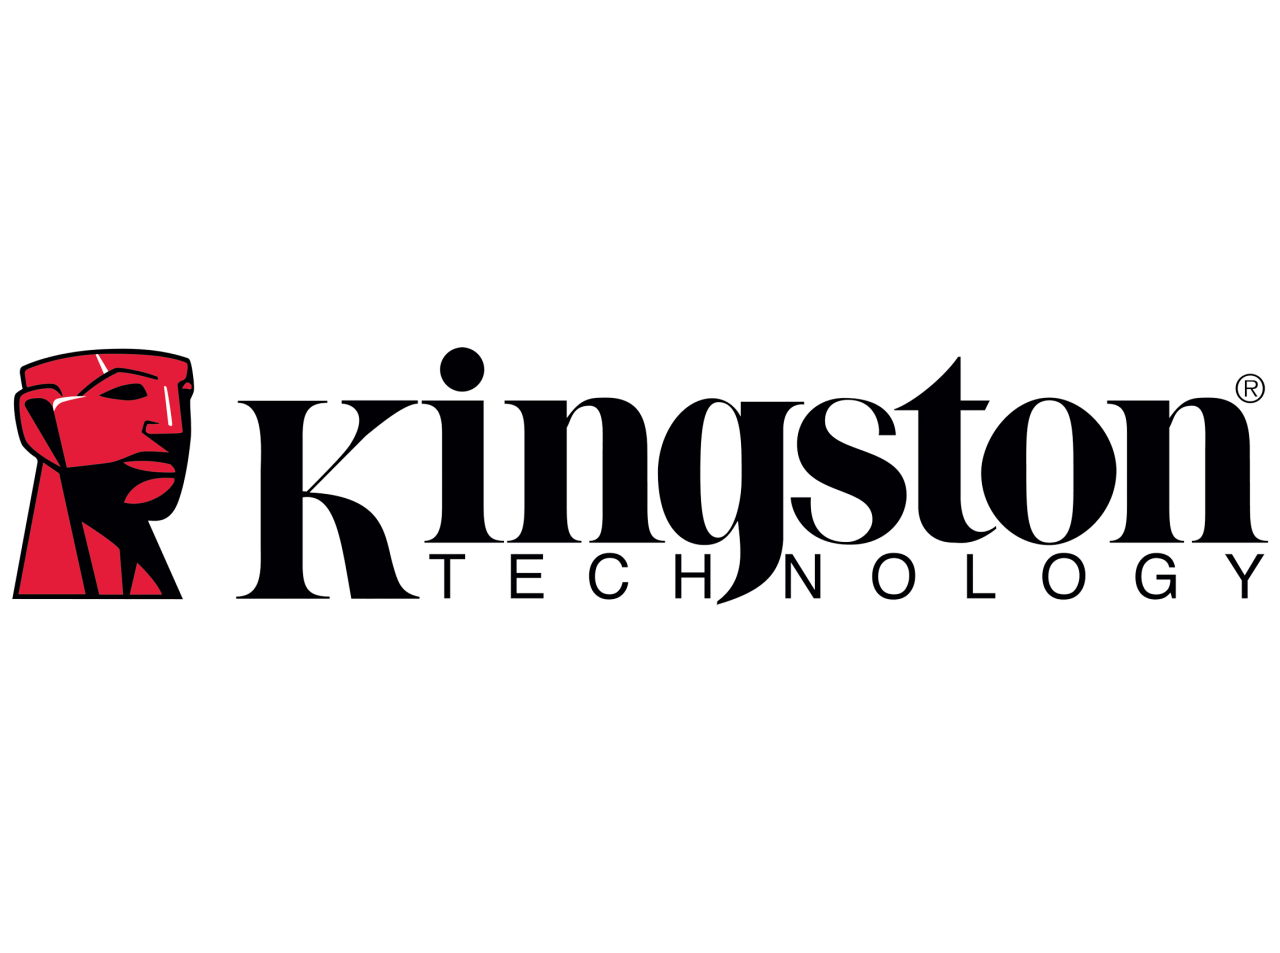 Kingston offre soluzioni per tutti: dal settore mobile a quello professionale